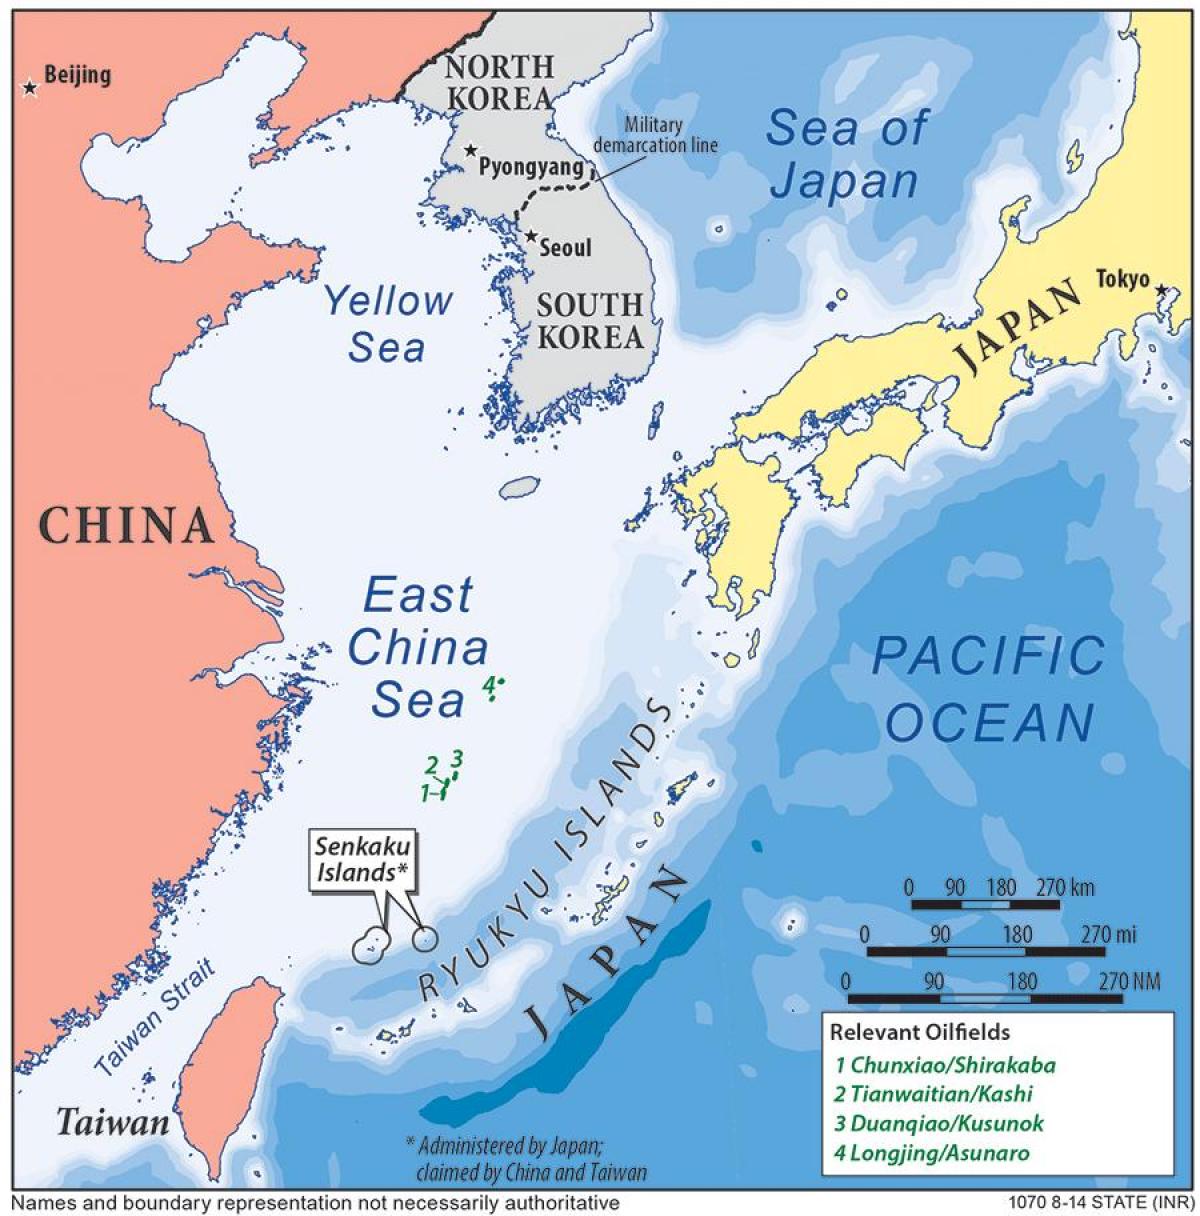 χάρτης της ανατολικής θάλασσας της Κίνας